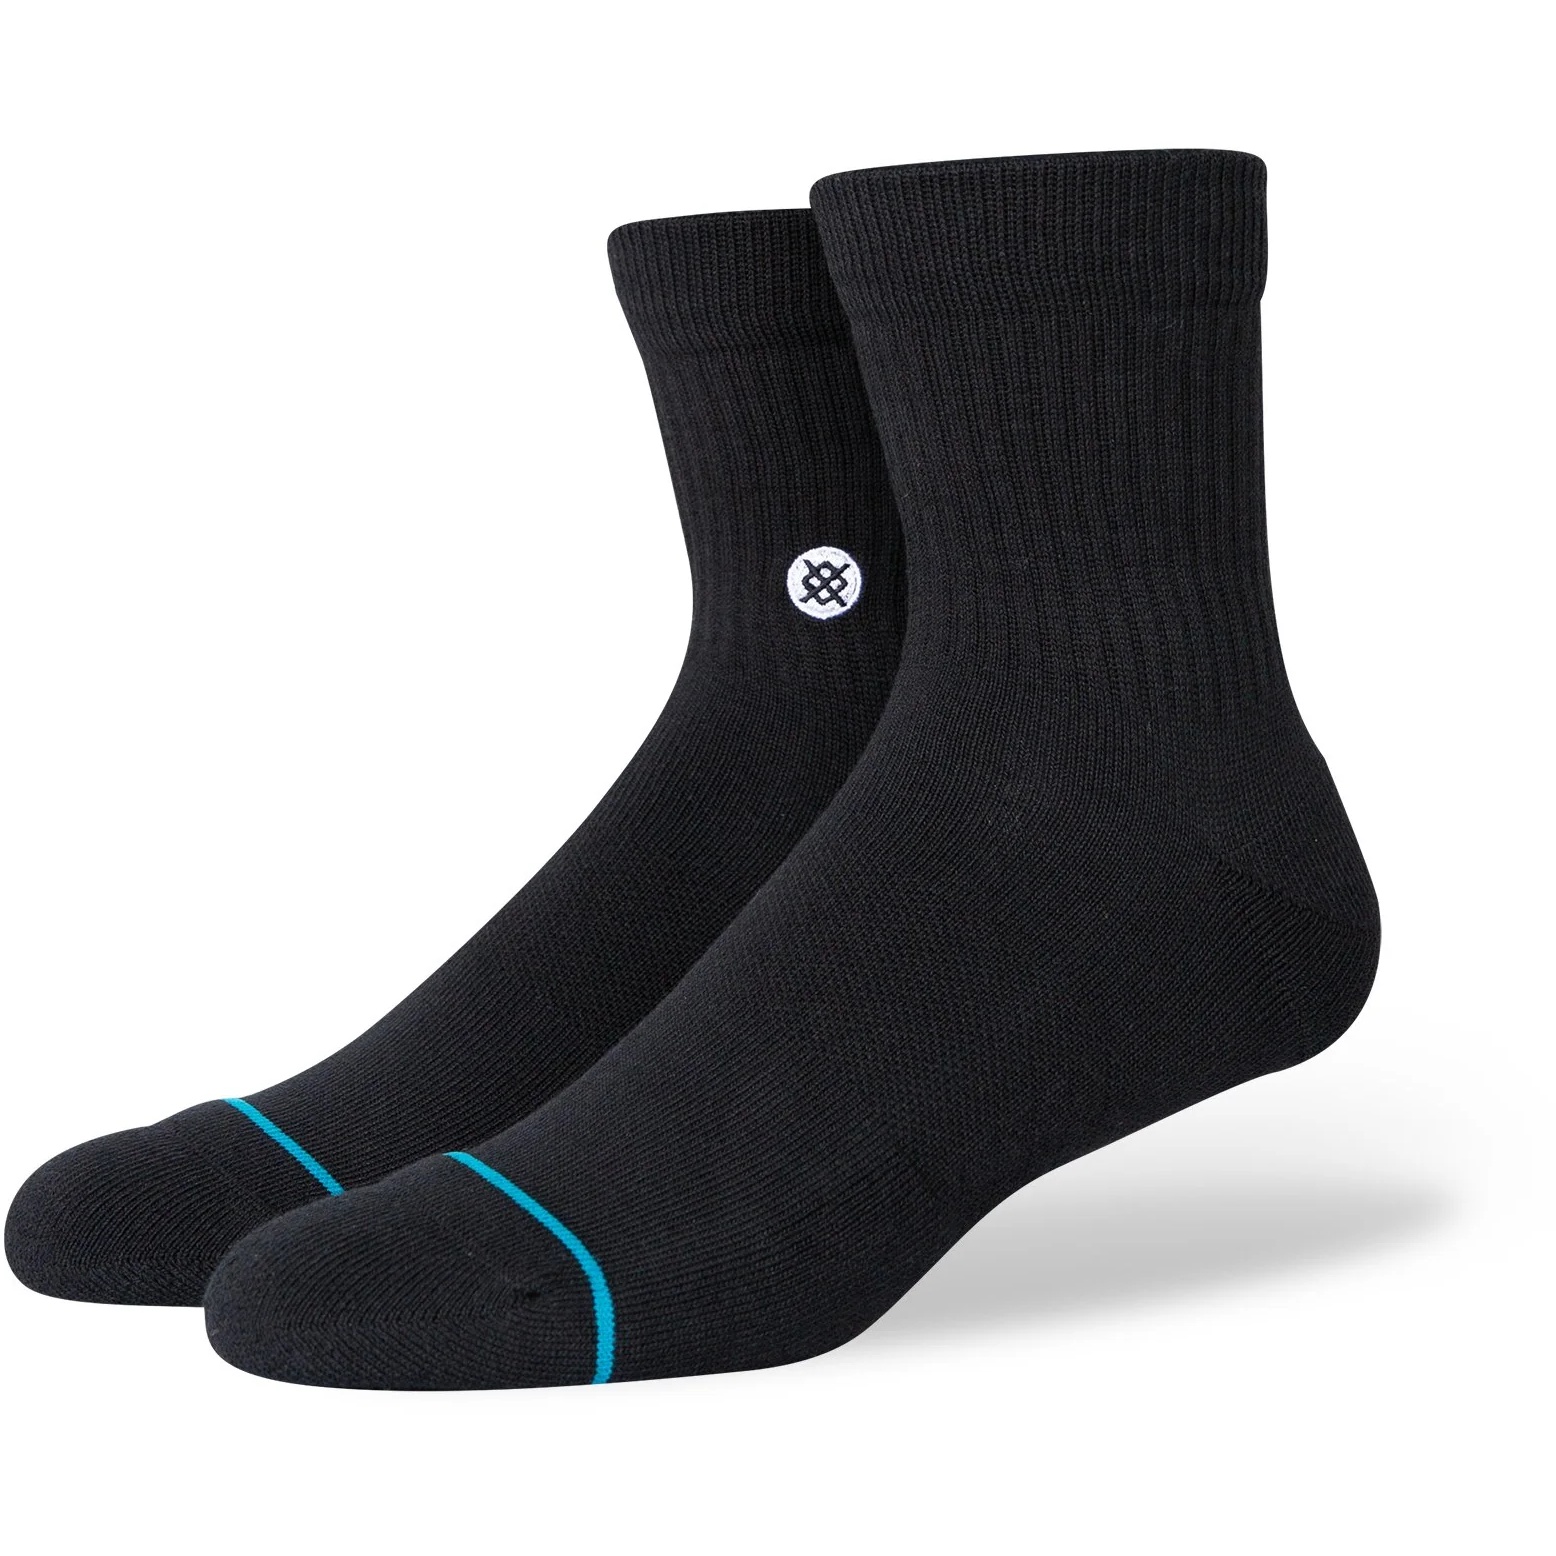 Produktbild von Stance Icon Quarter Socken Unisex - schwarz